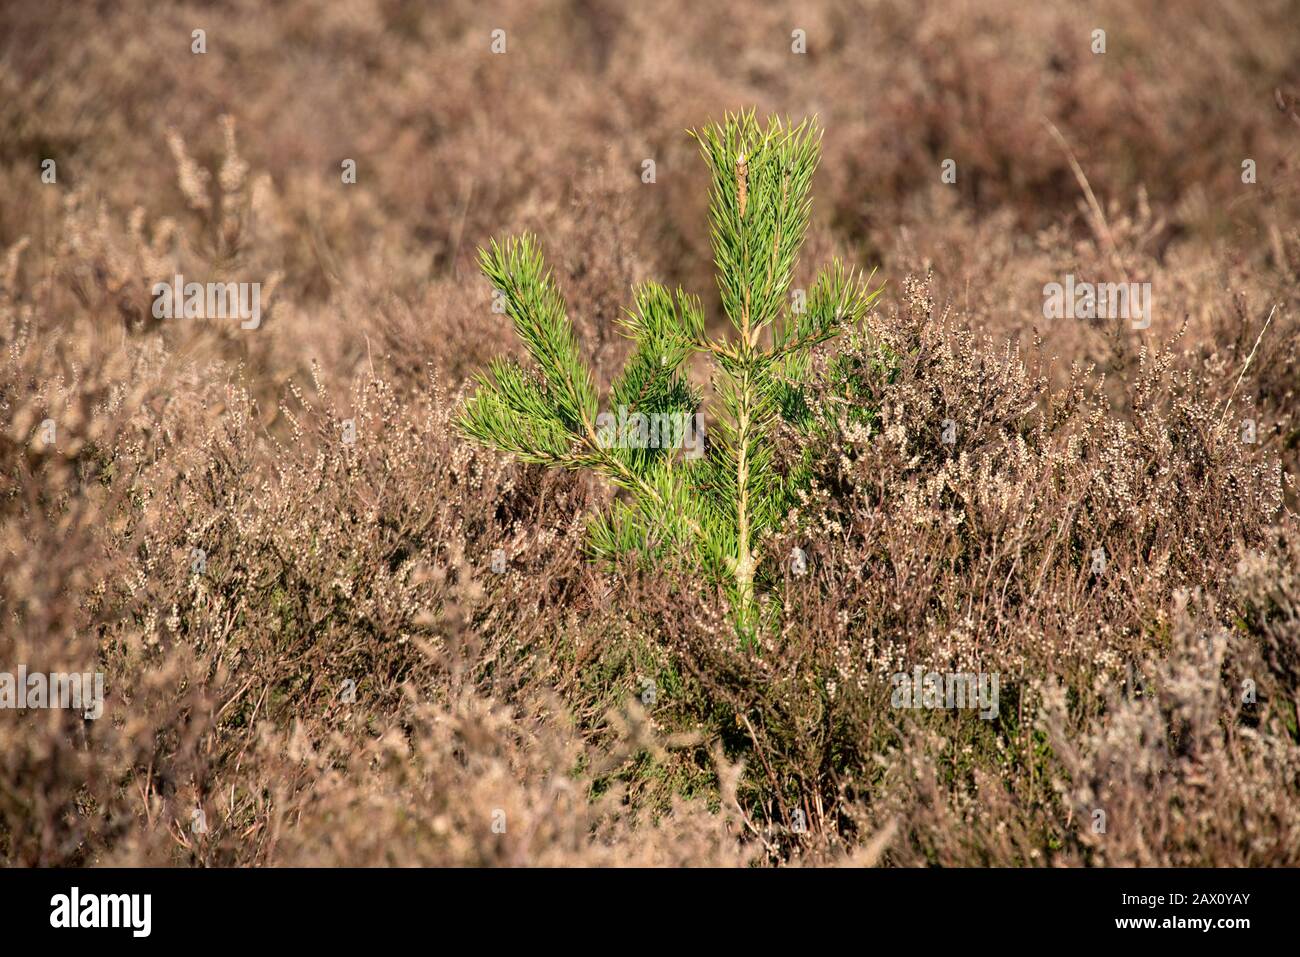 El sapling de un árbol del pino escocés (Pinus sylvestris) que crece entre brezo del invierno en Berkshire breathland en regowth manejado, Berkshire, febrero Foto de stock